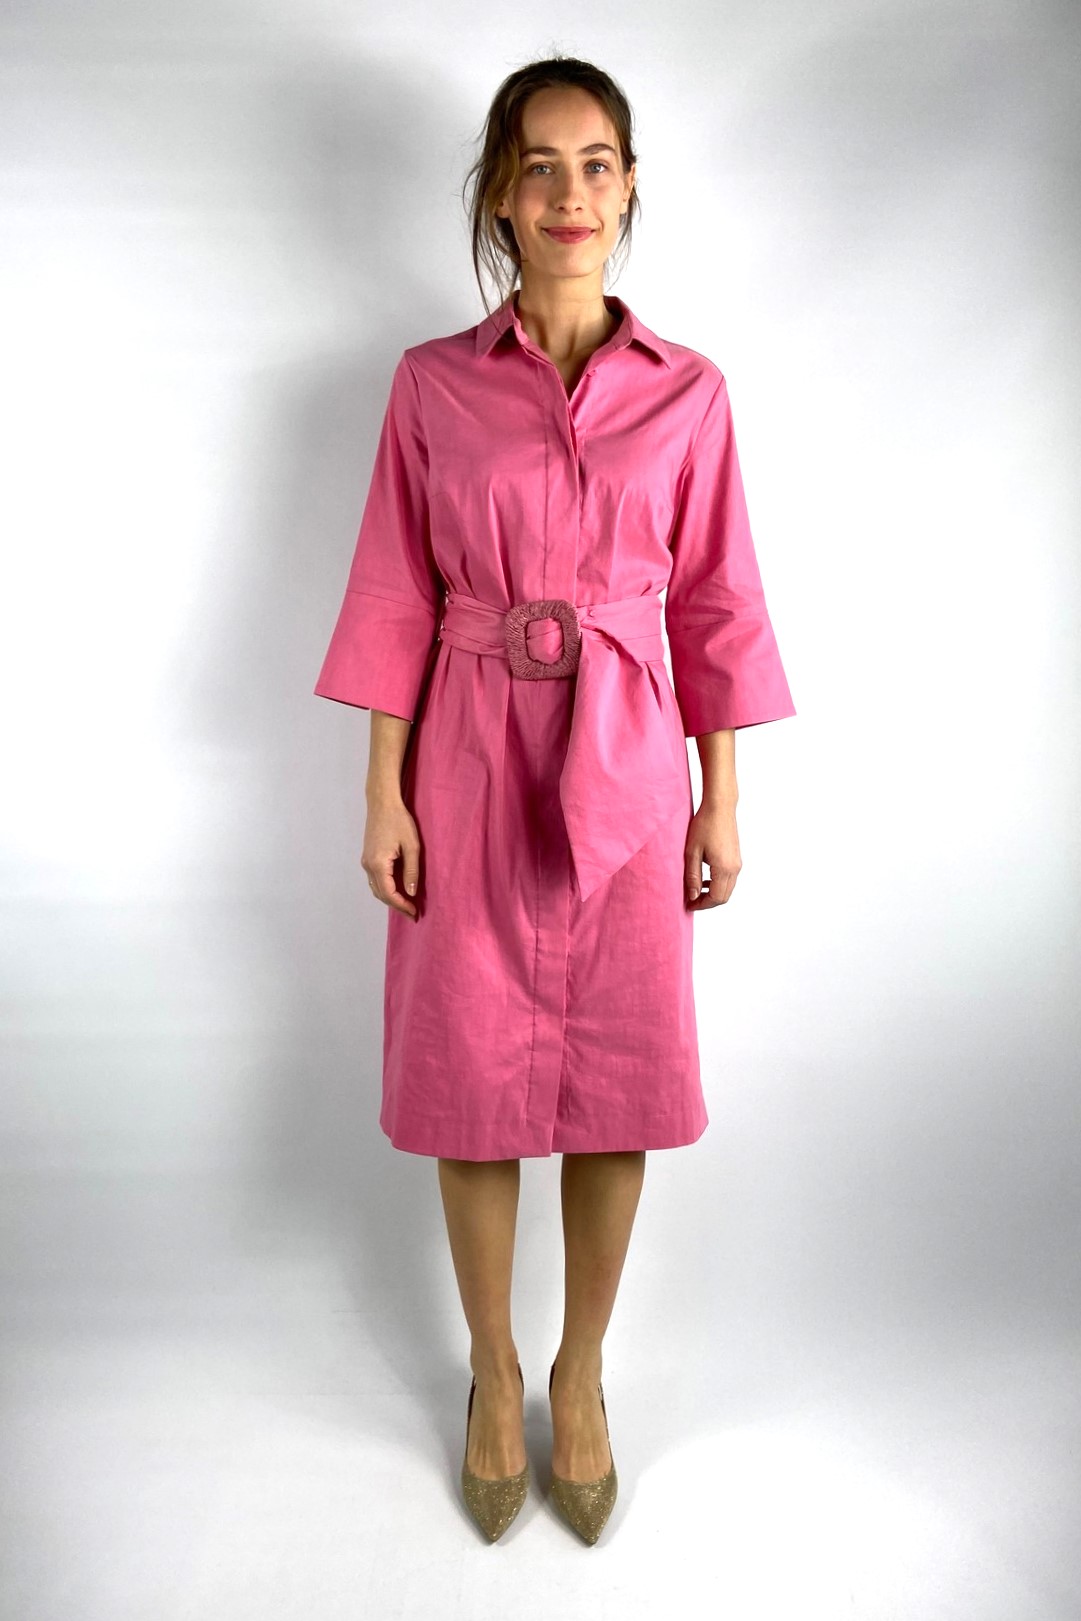 Kleed katoen linnen stretch in de kleur roze van het merk Natan